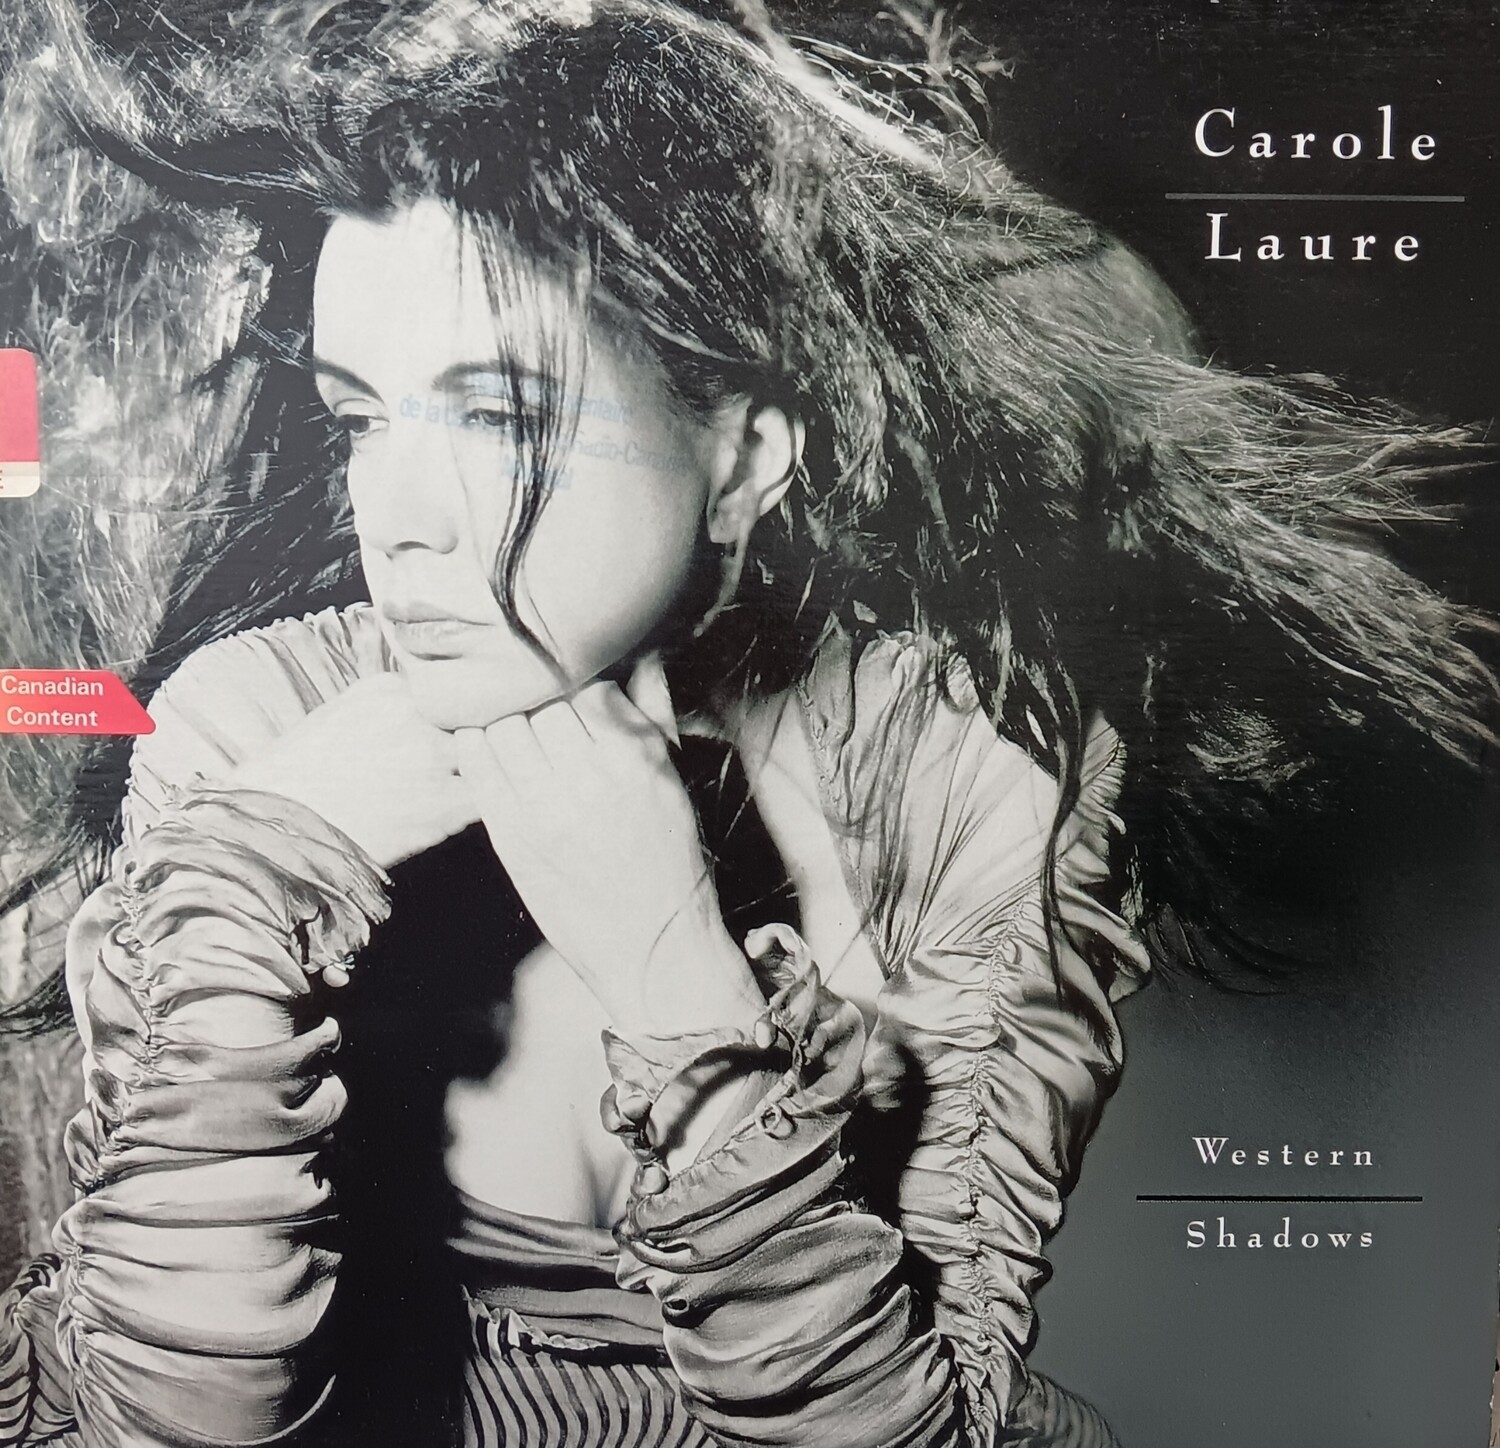 CAROLE LAURE - Western Shadows